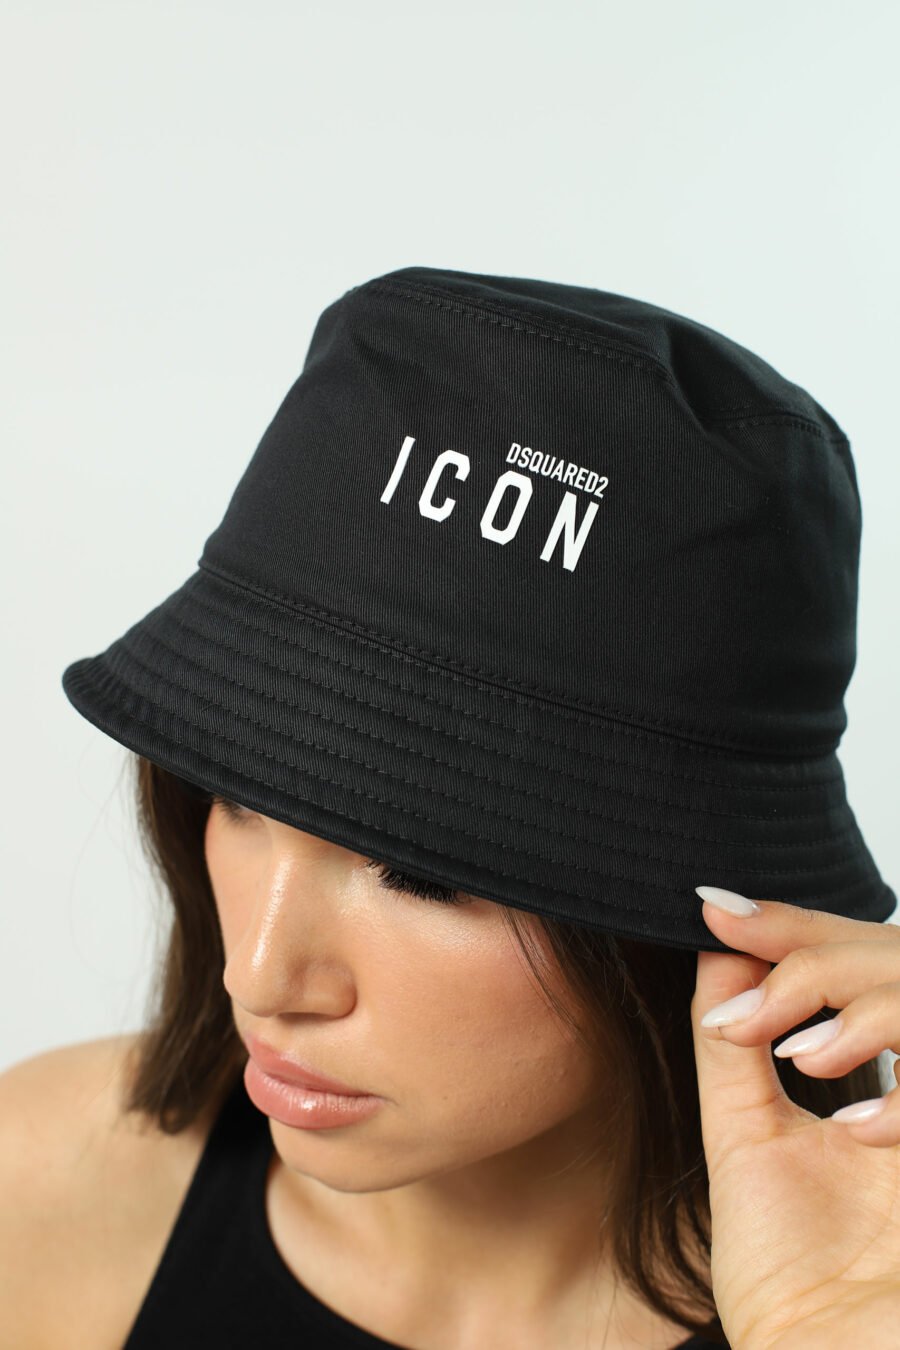 Black fisherman's cap with white double "icon" logo - Photos 2533